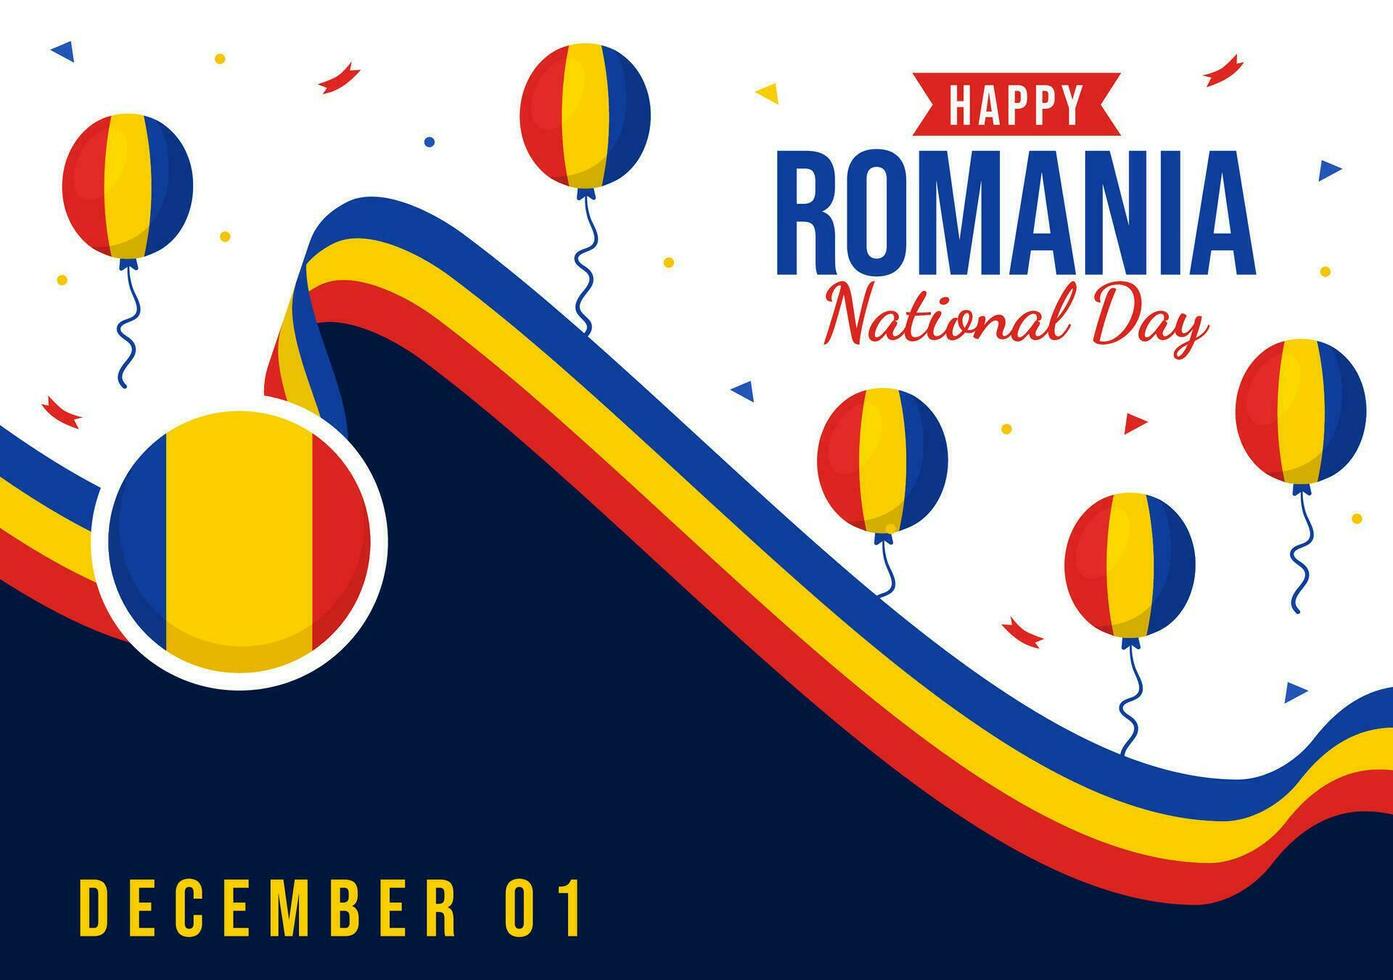 rumänien nationell dag vektor illustration på 1:a december med vinka flagga bakgrund i rumänska bra union minnesmärke Semester platt tecknad serie design